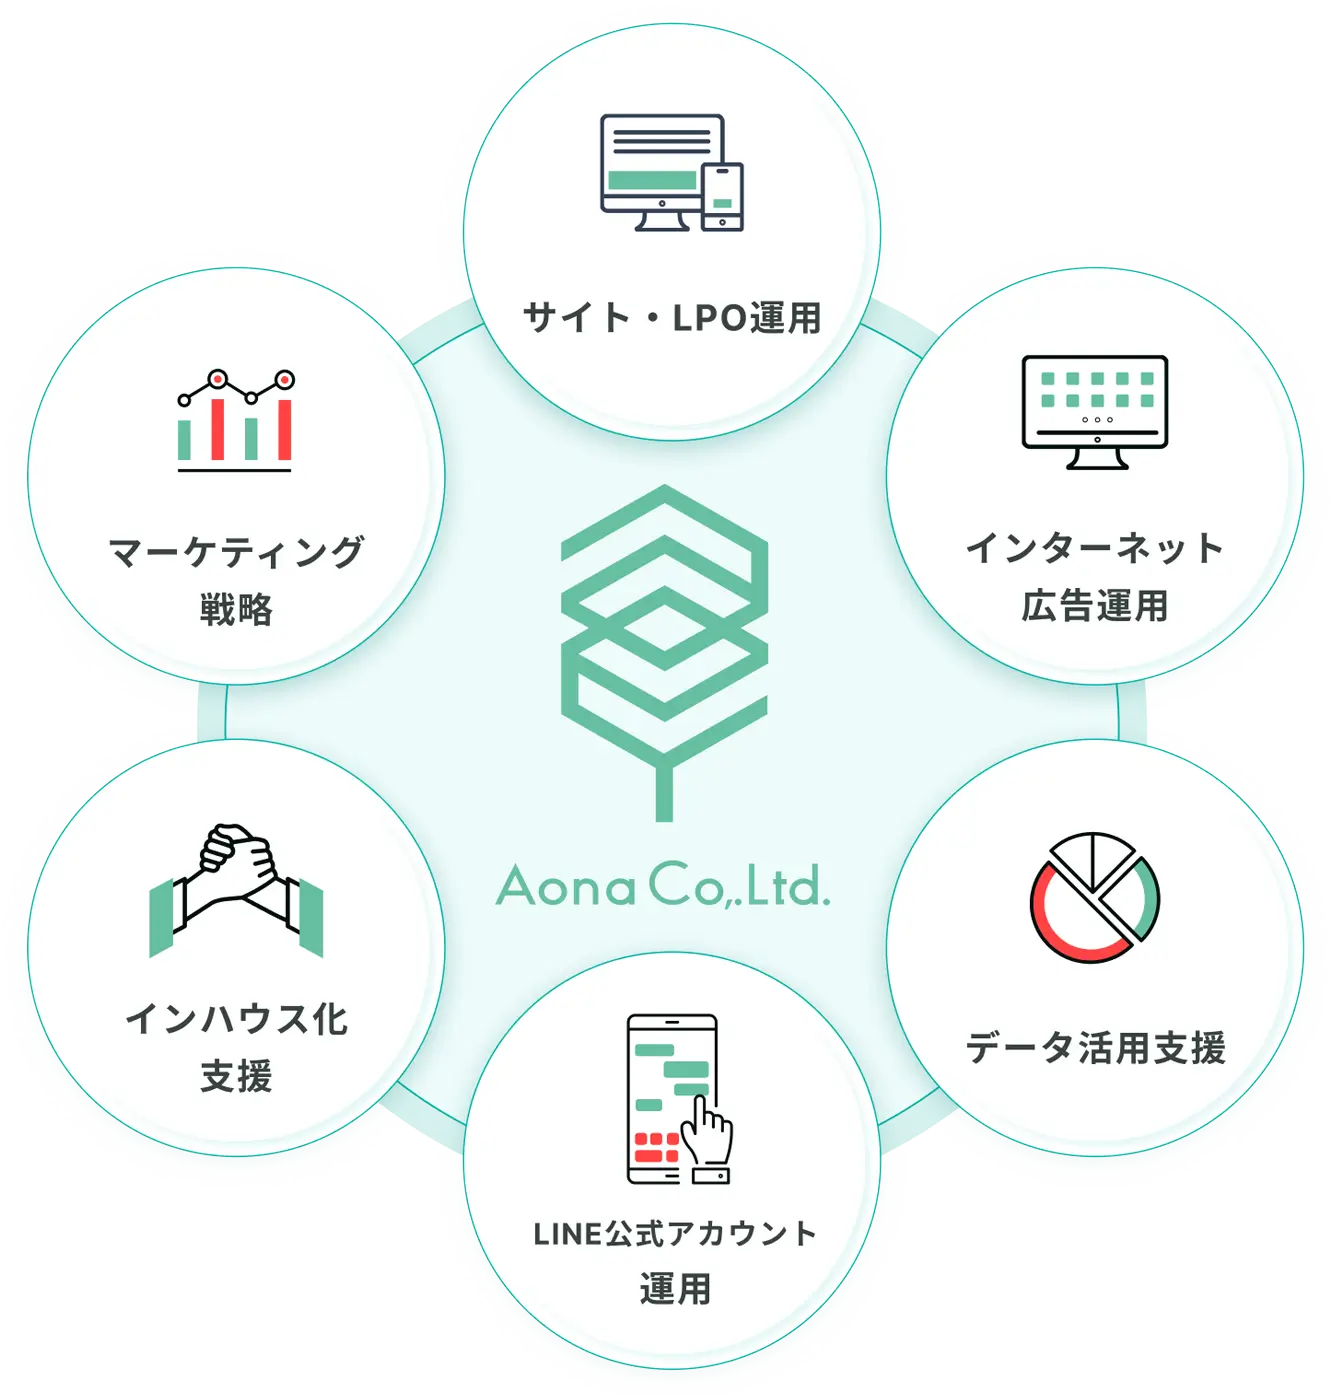 Aonaのマーケティング体制提供支援